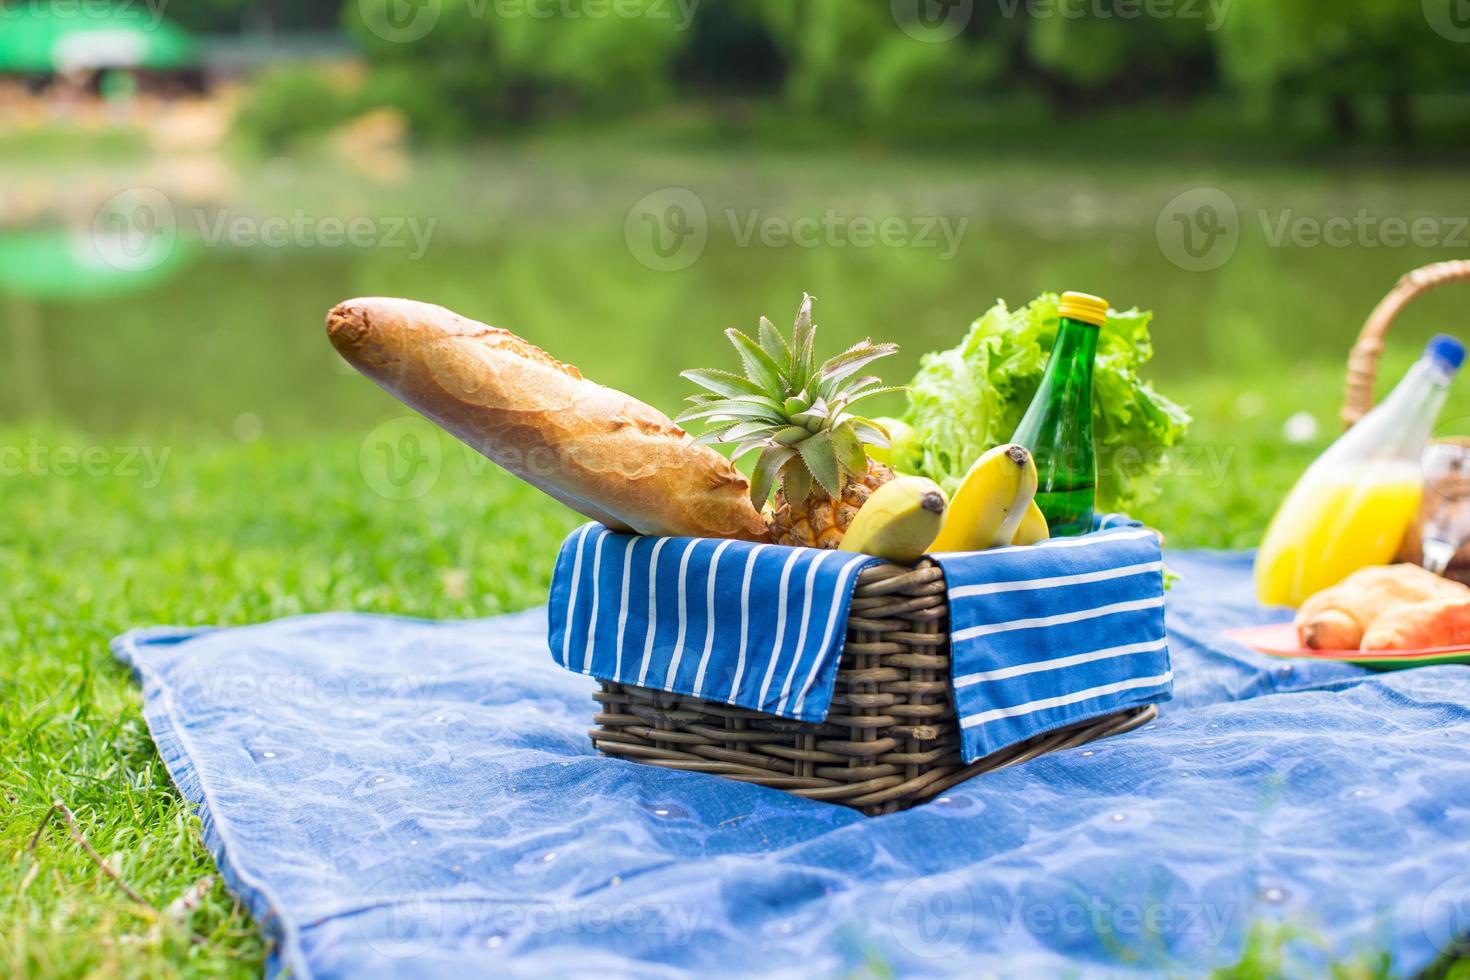 Picknickkorb mit Obst, Brot und einer Flasche Weißwein foto